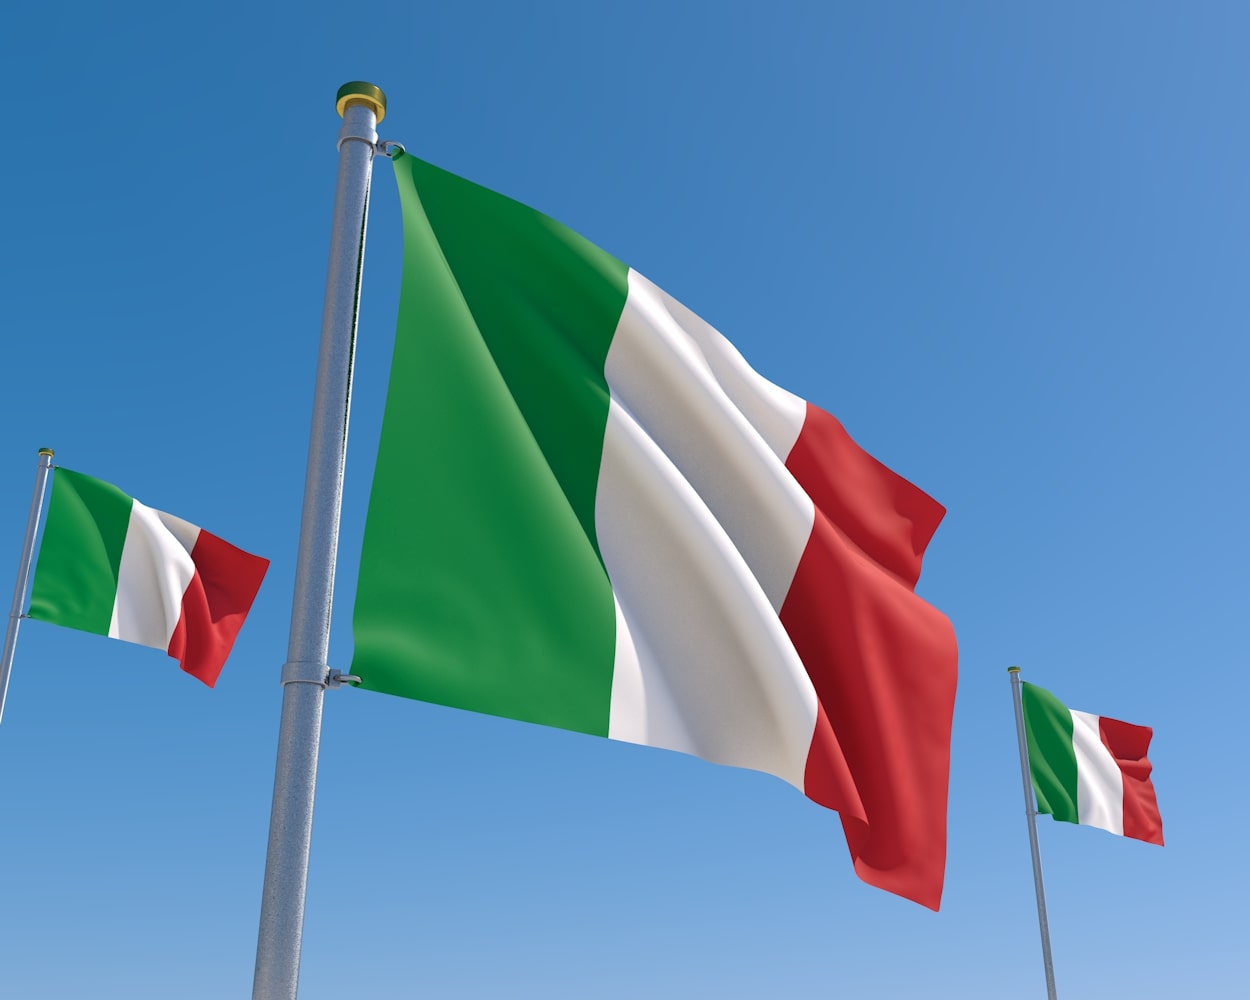 青空の下、風になびくイタリア国旗